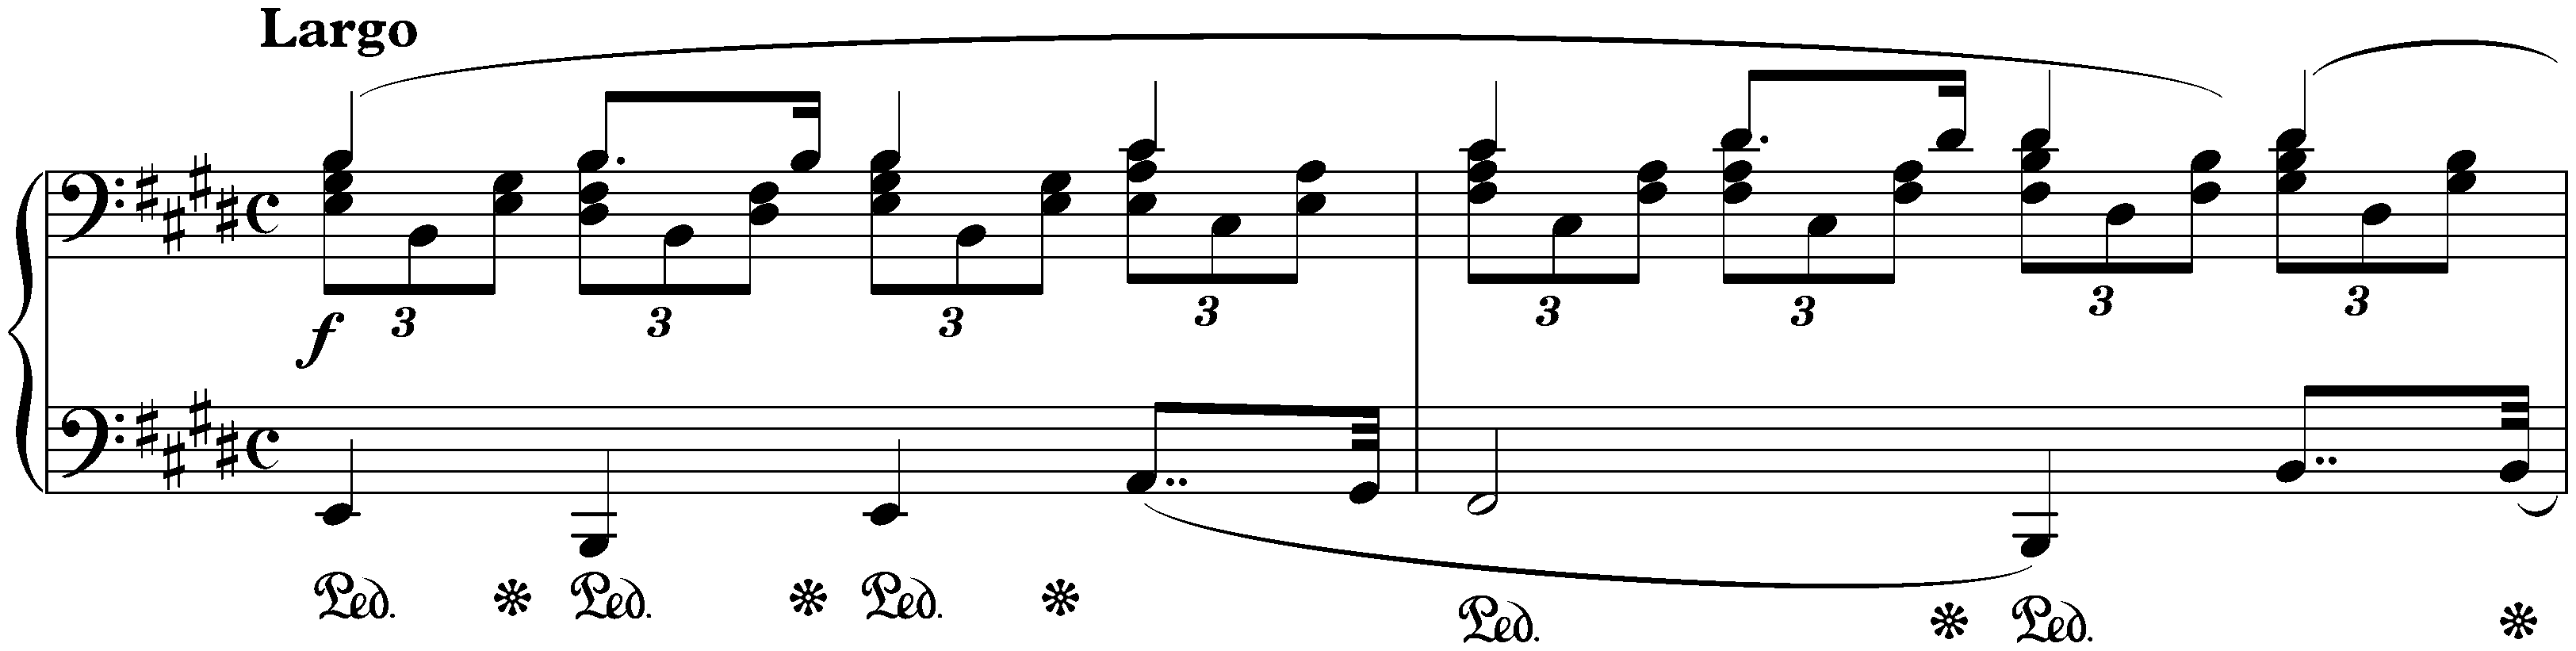 Twenty-four Préludes, op. 28; 9. E major